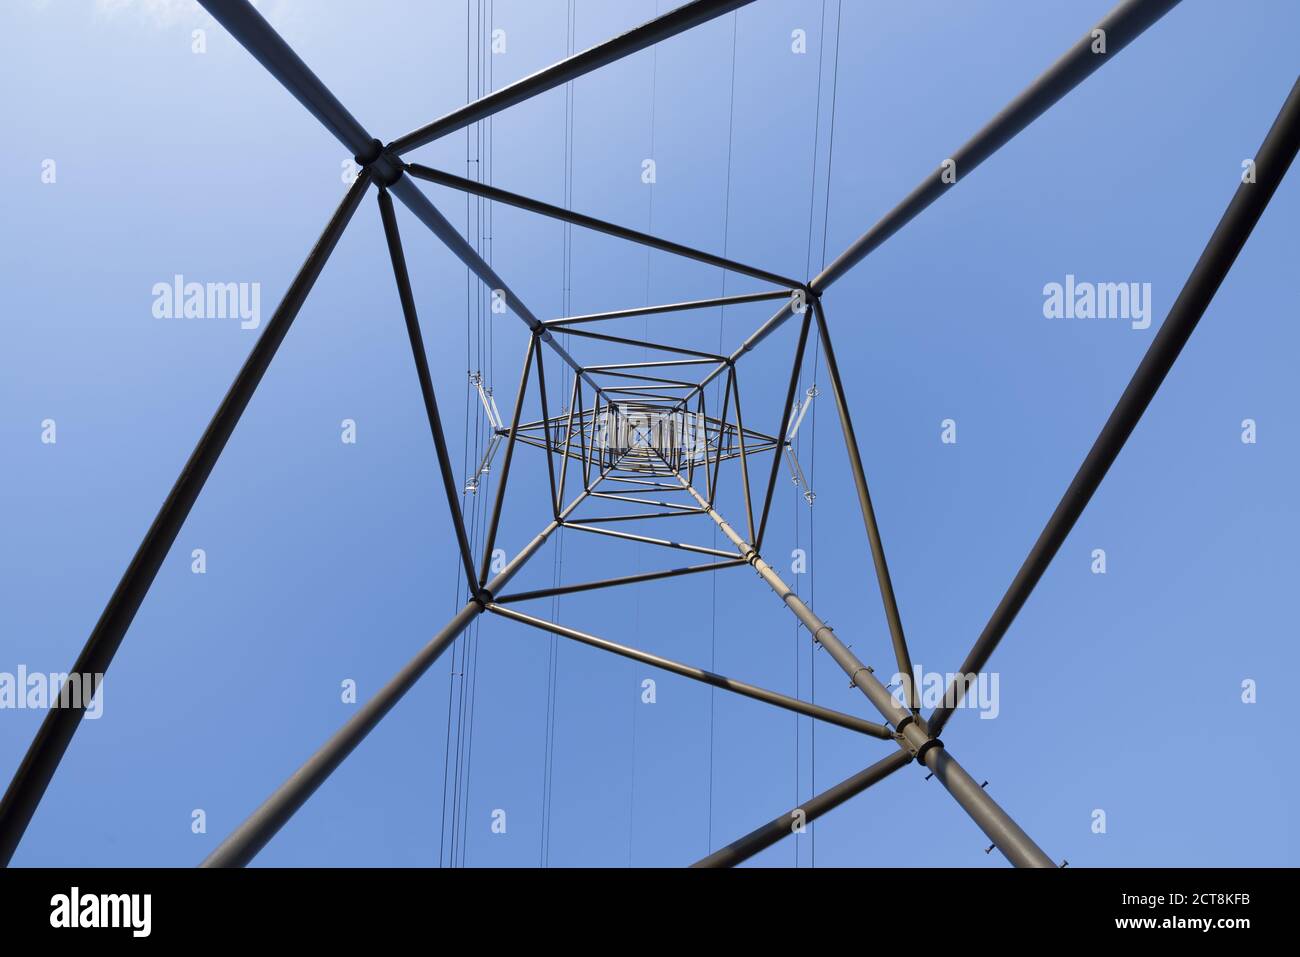 Electricity Pylons In Switzerland Stockfotos und -bilder Kaufen - Alamy